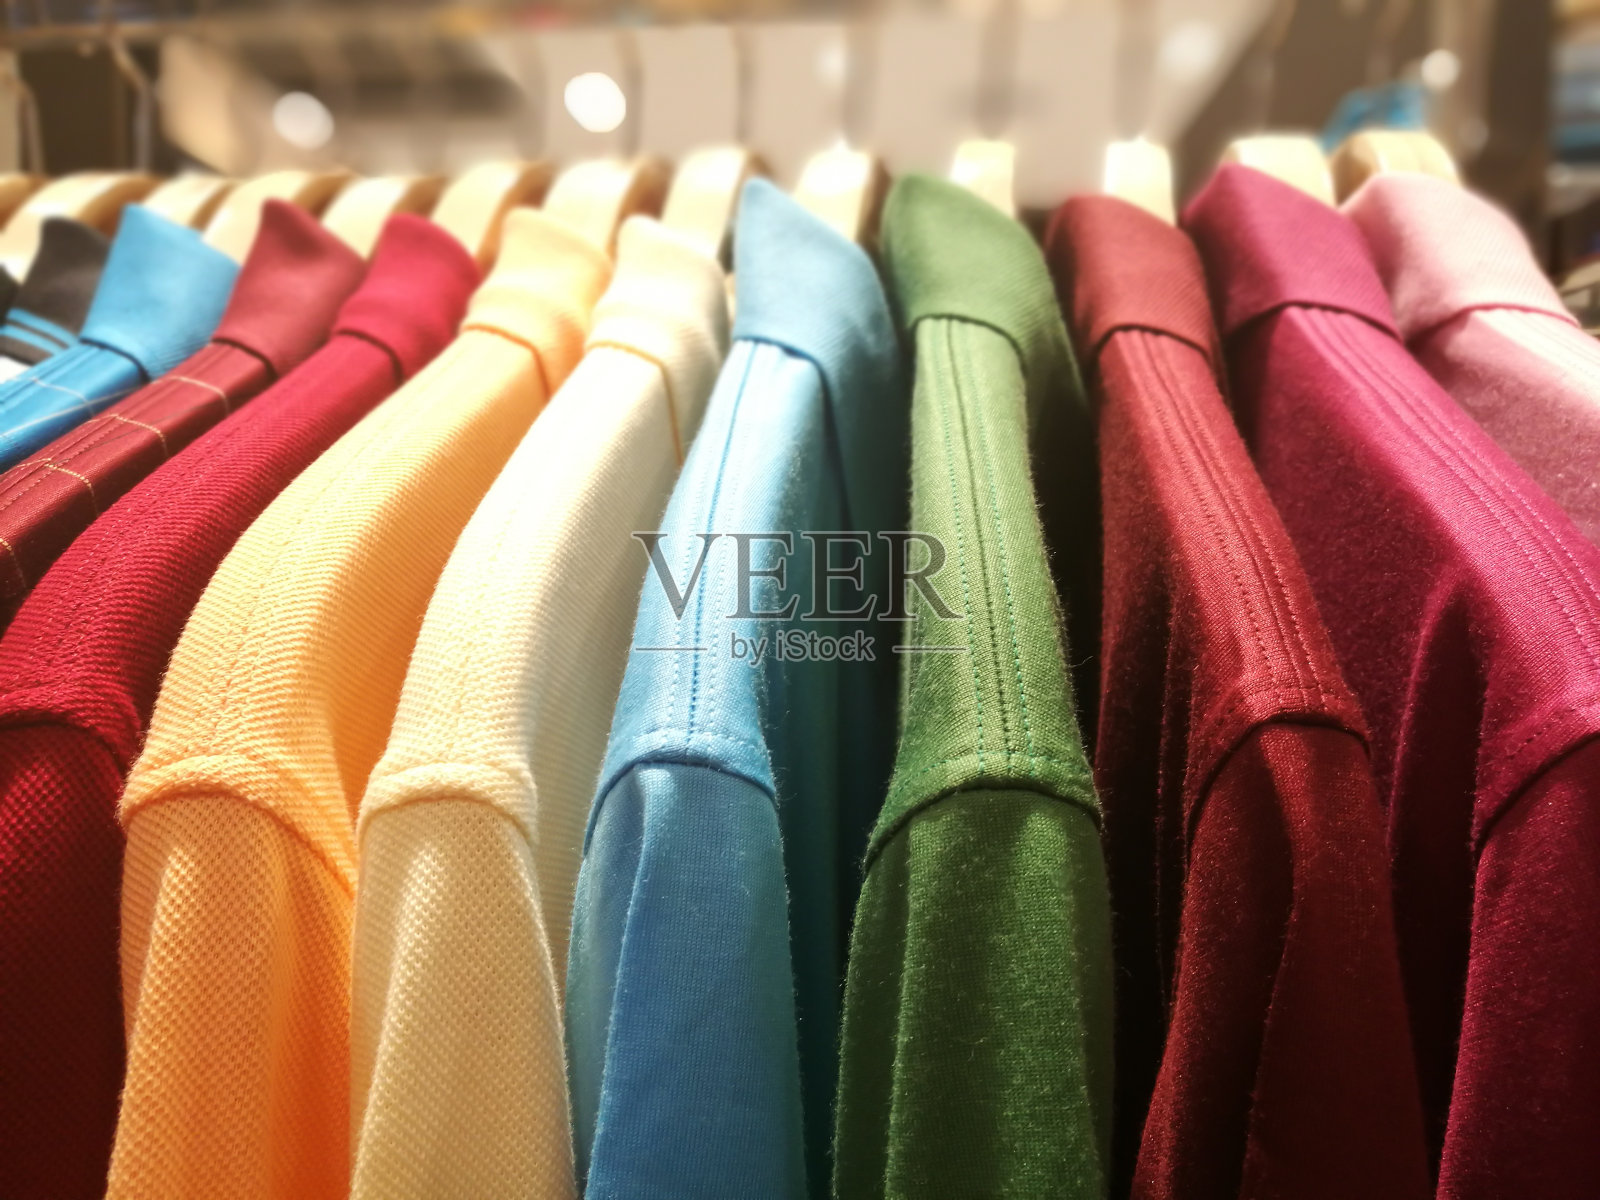 不同颜色的男式衬衫挂在零售服装店的衣架上照片摄影图片